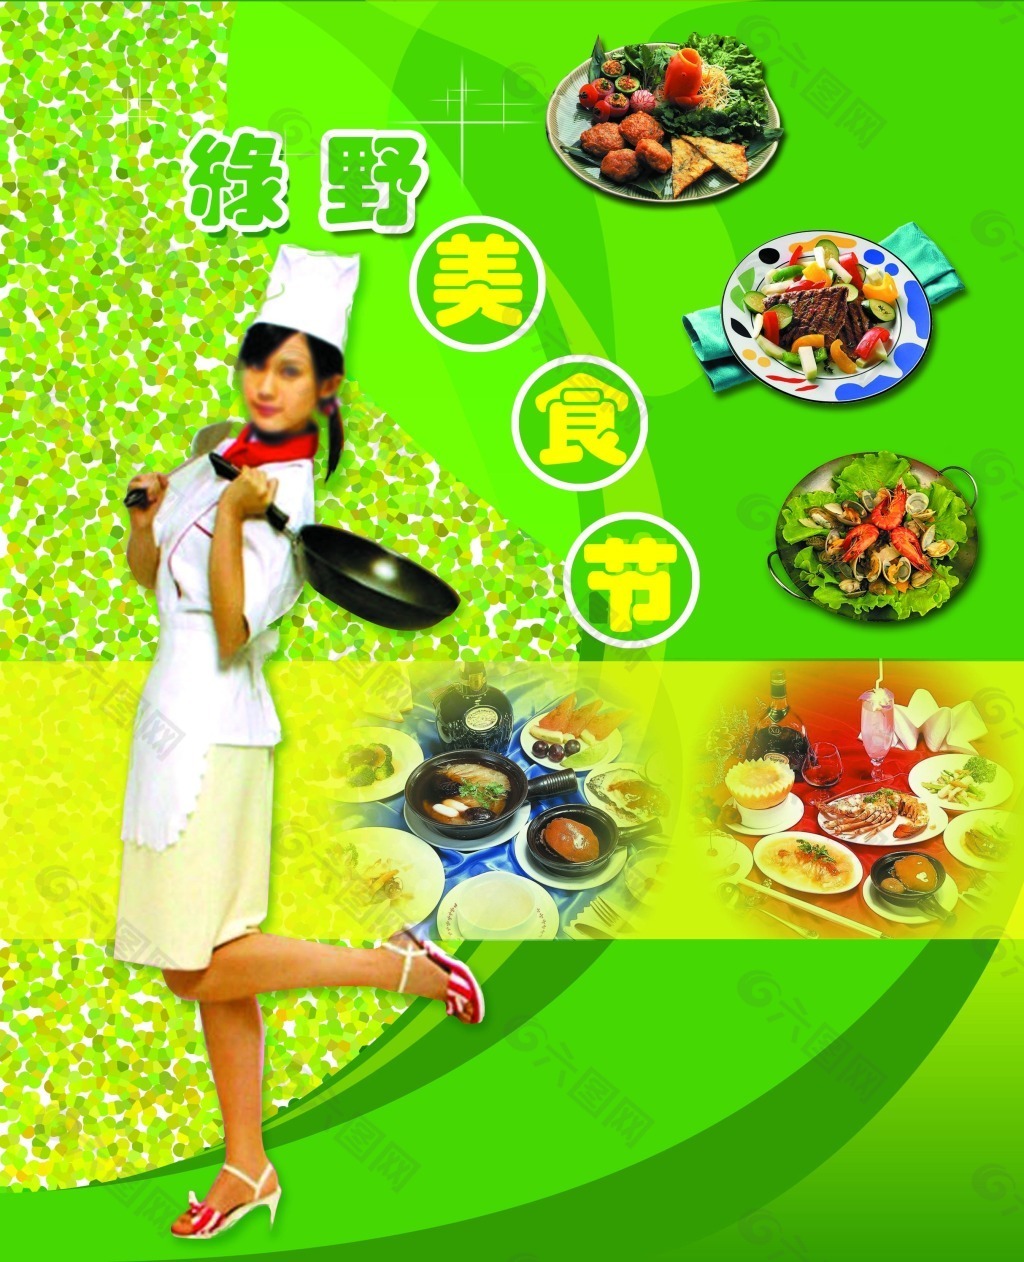 绿野美食节宣传海报